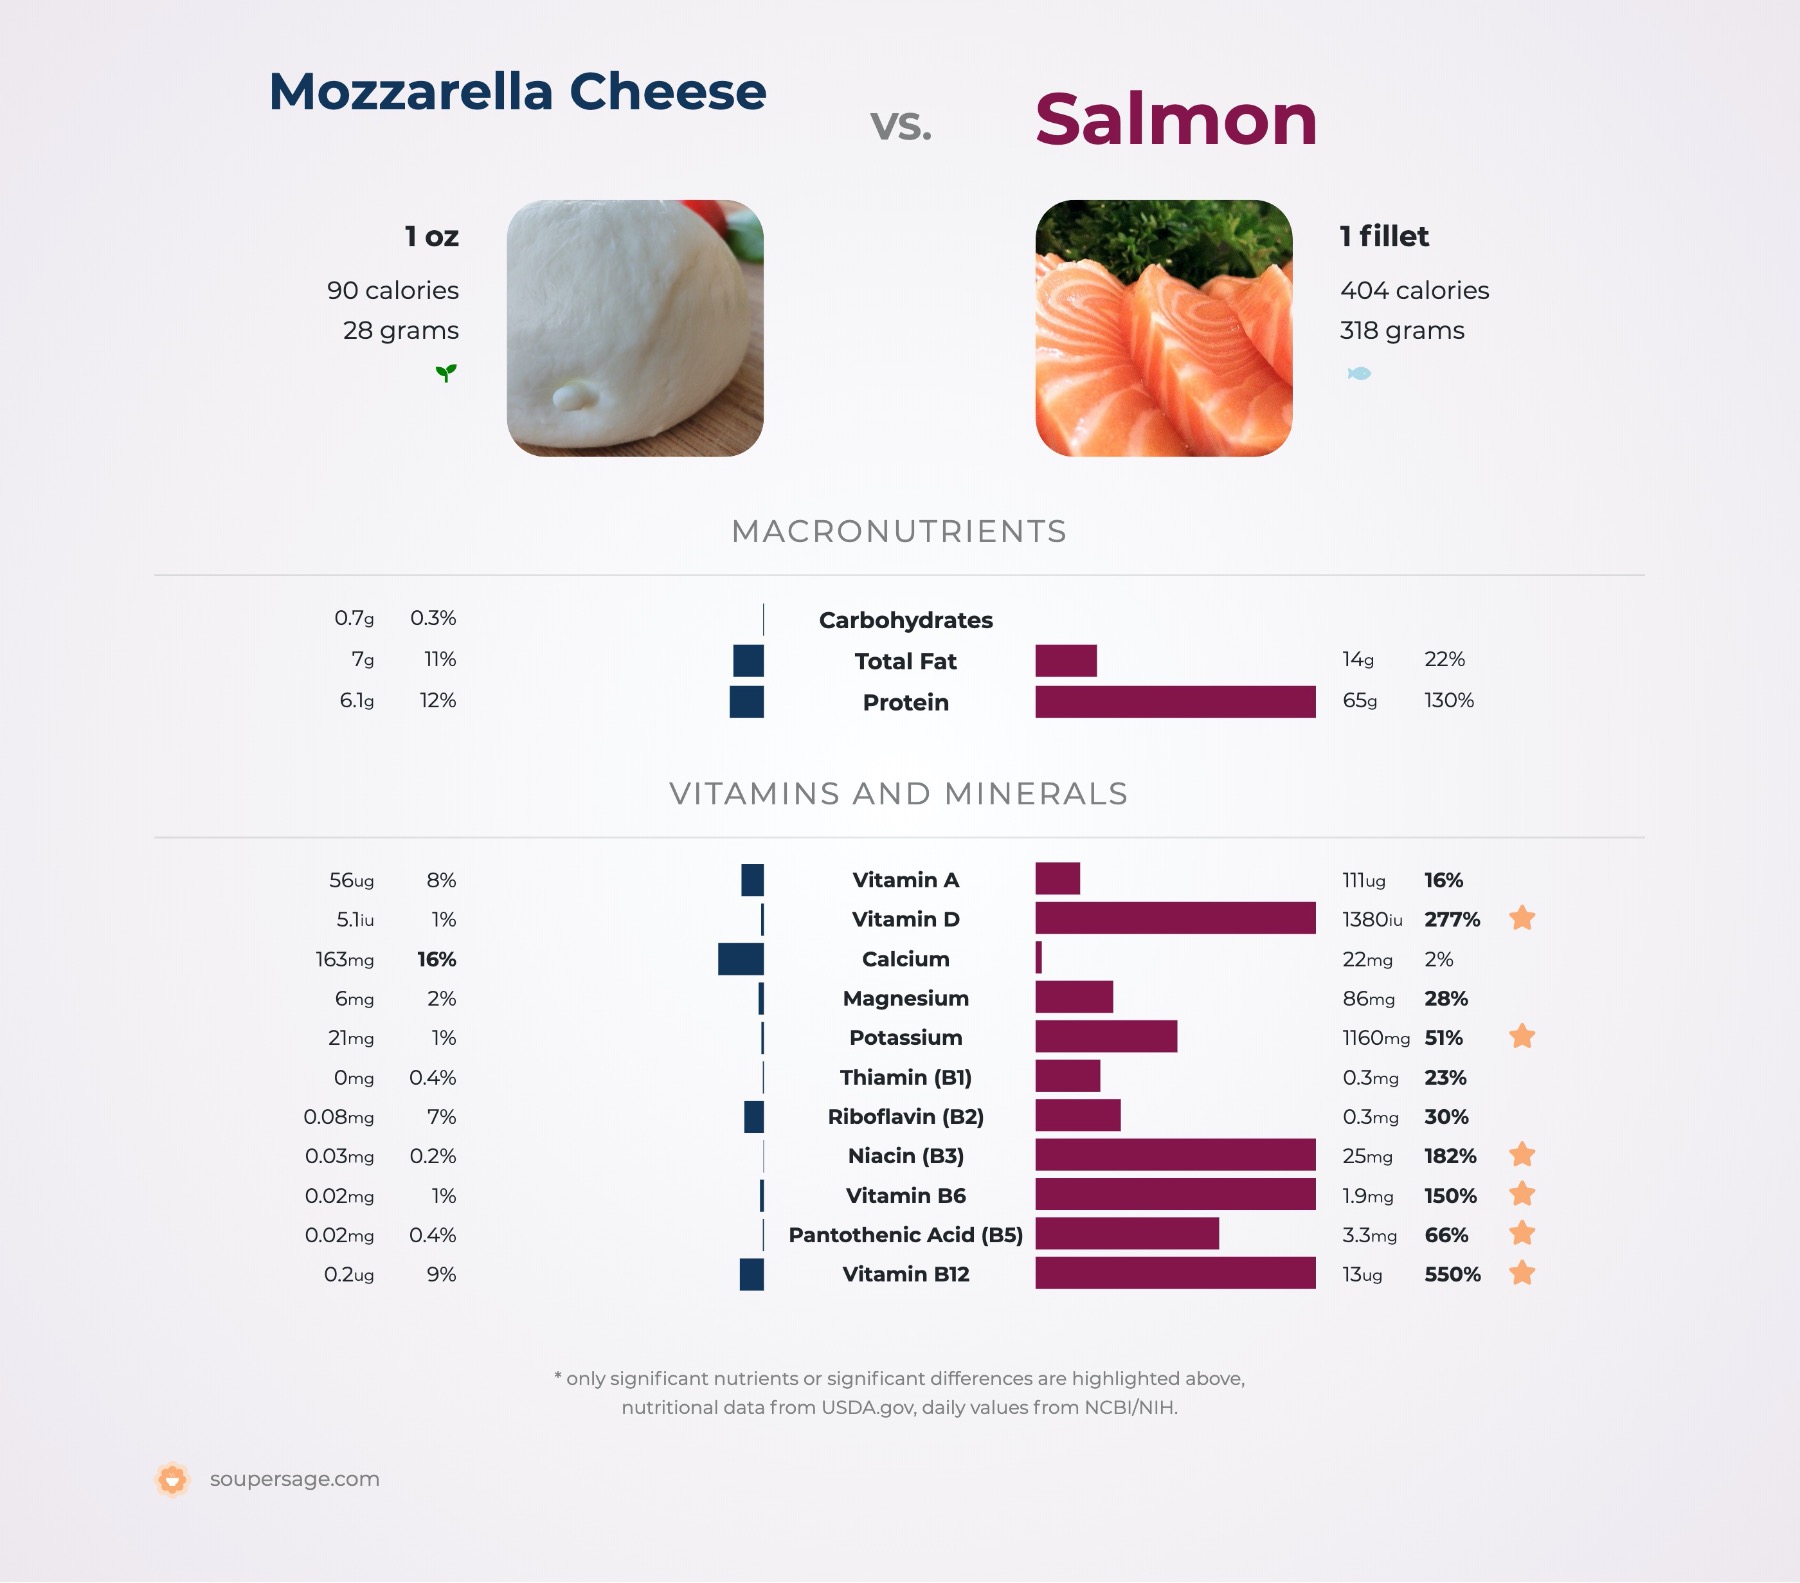 nutrition comparison of mozzarella cheese vs. salmon